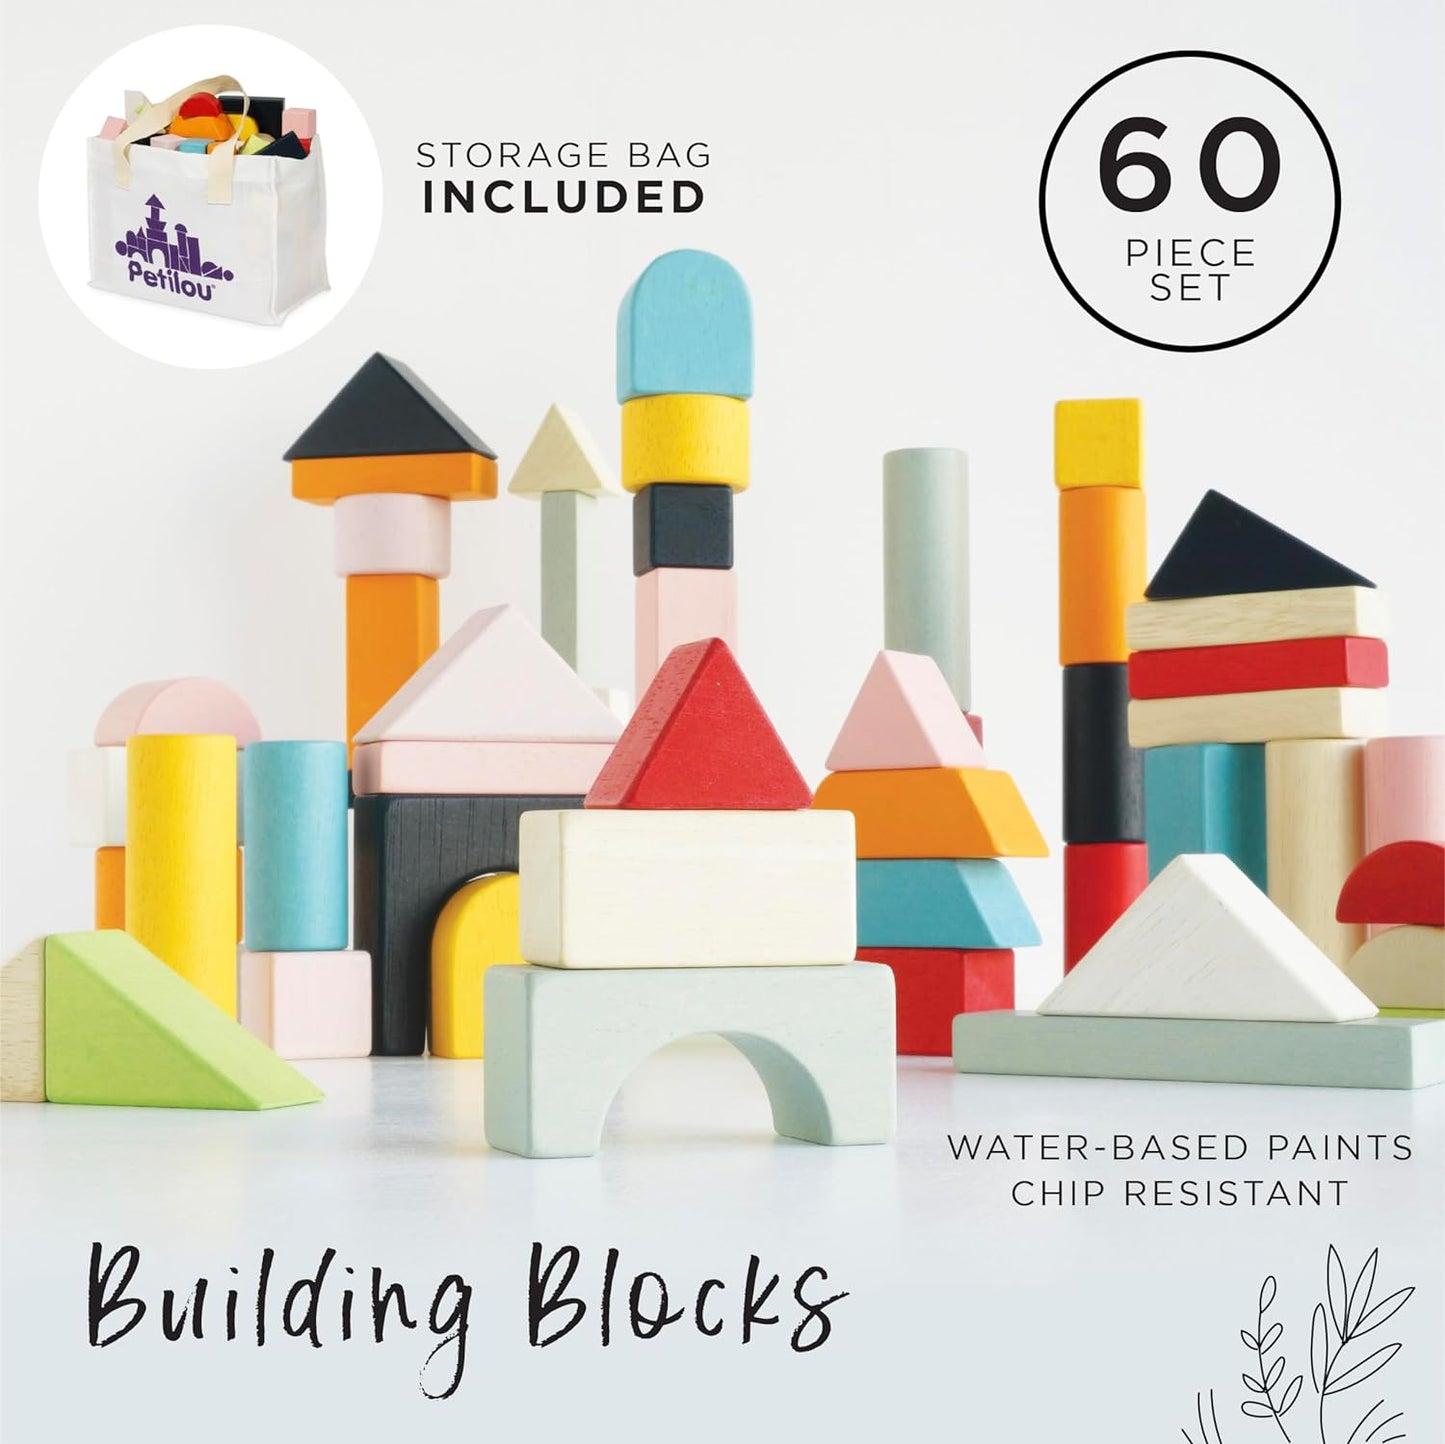 Le Toy Van - Blocos de construção de madeira educacionais Conjunto de brinquedos de 60 peças | Brinquedo de desenvolvimento de cores e formas estilo Montessori - adequado para 12 meses +